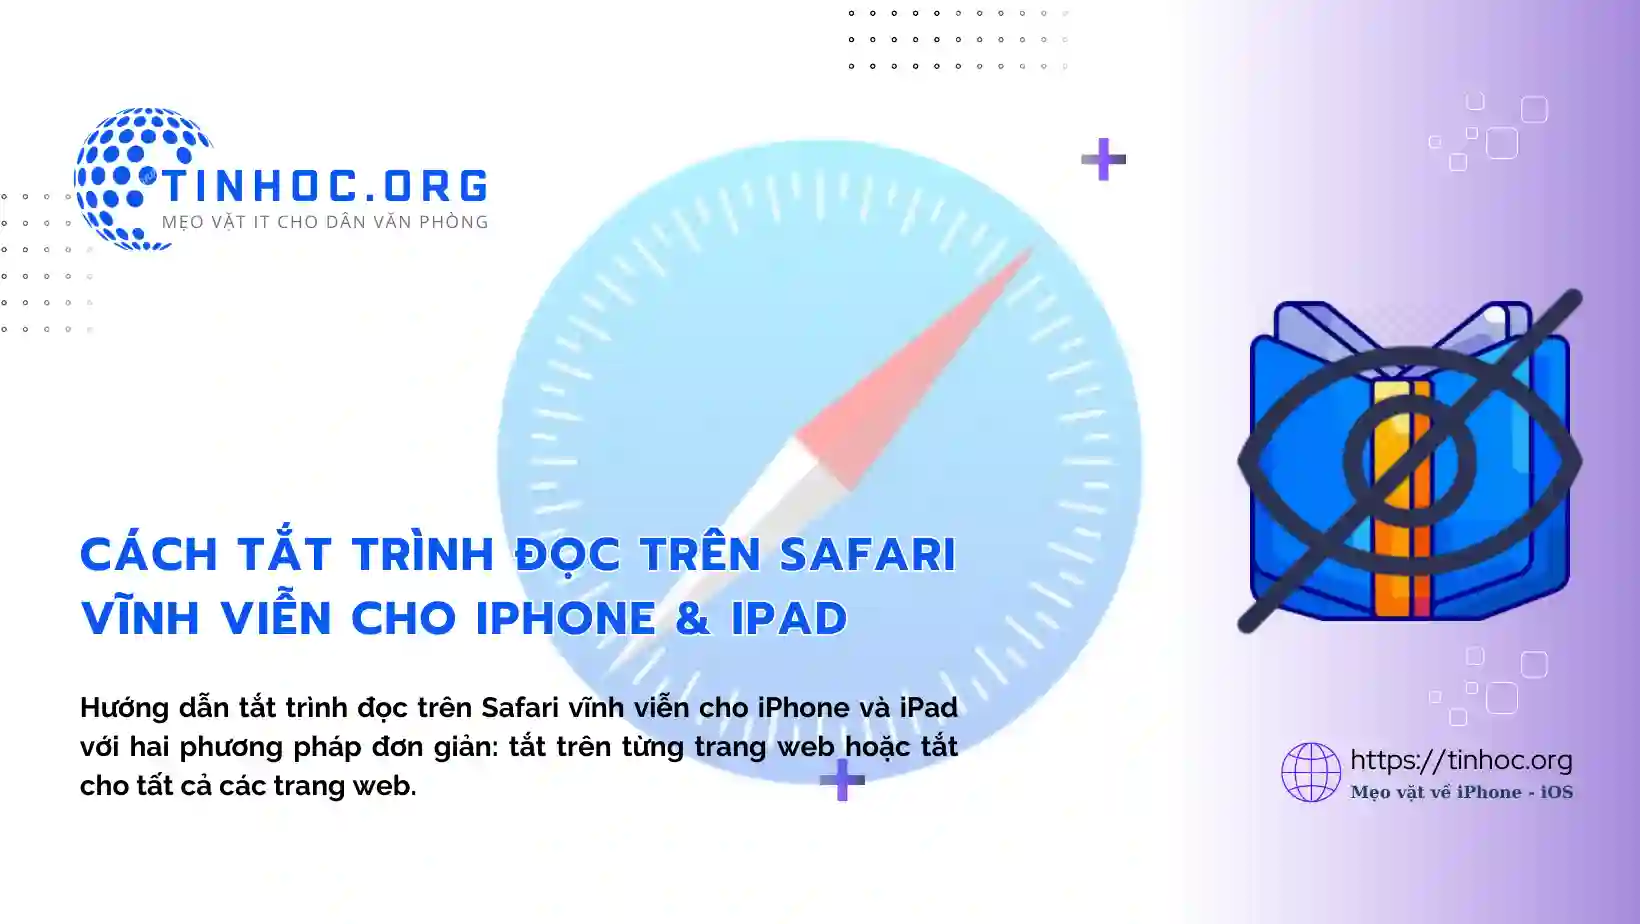 Cách tắt trình đọc trên Safari vĩnh viễn cho iPhone & iPad